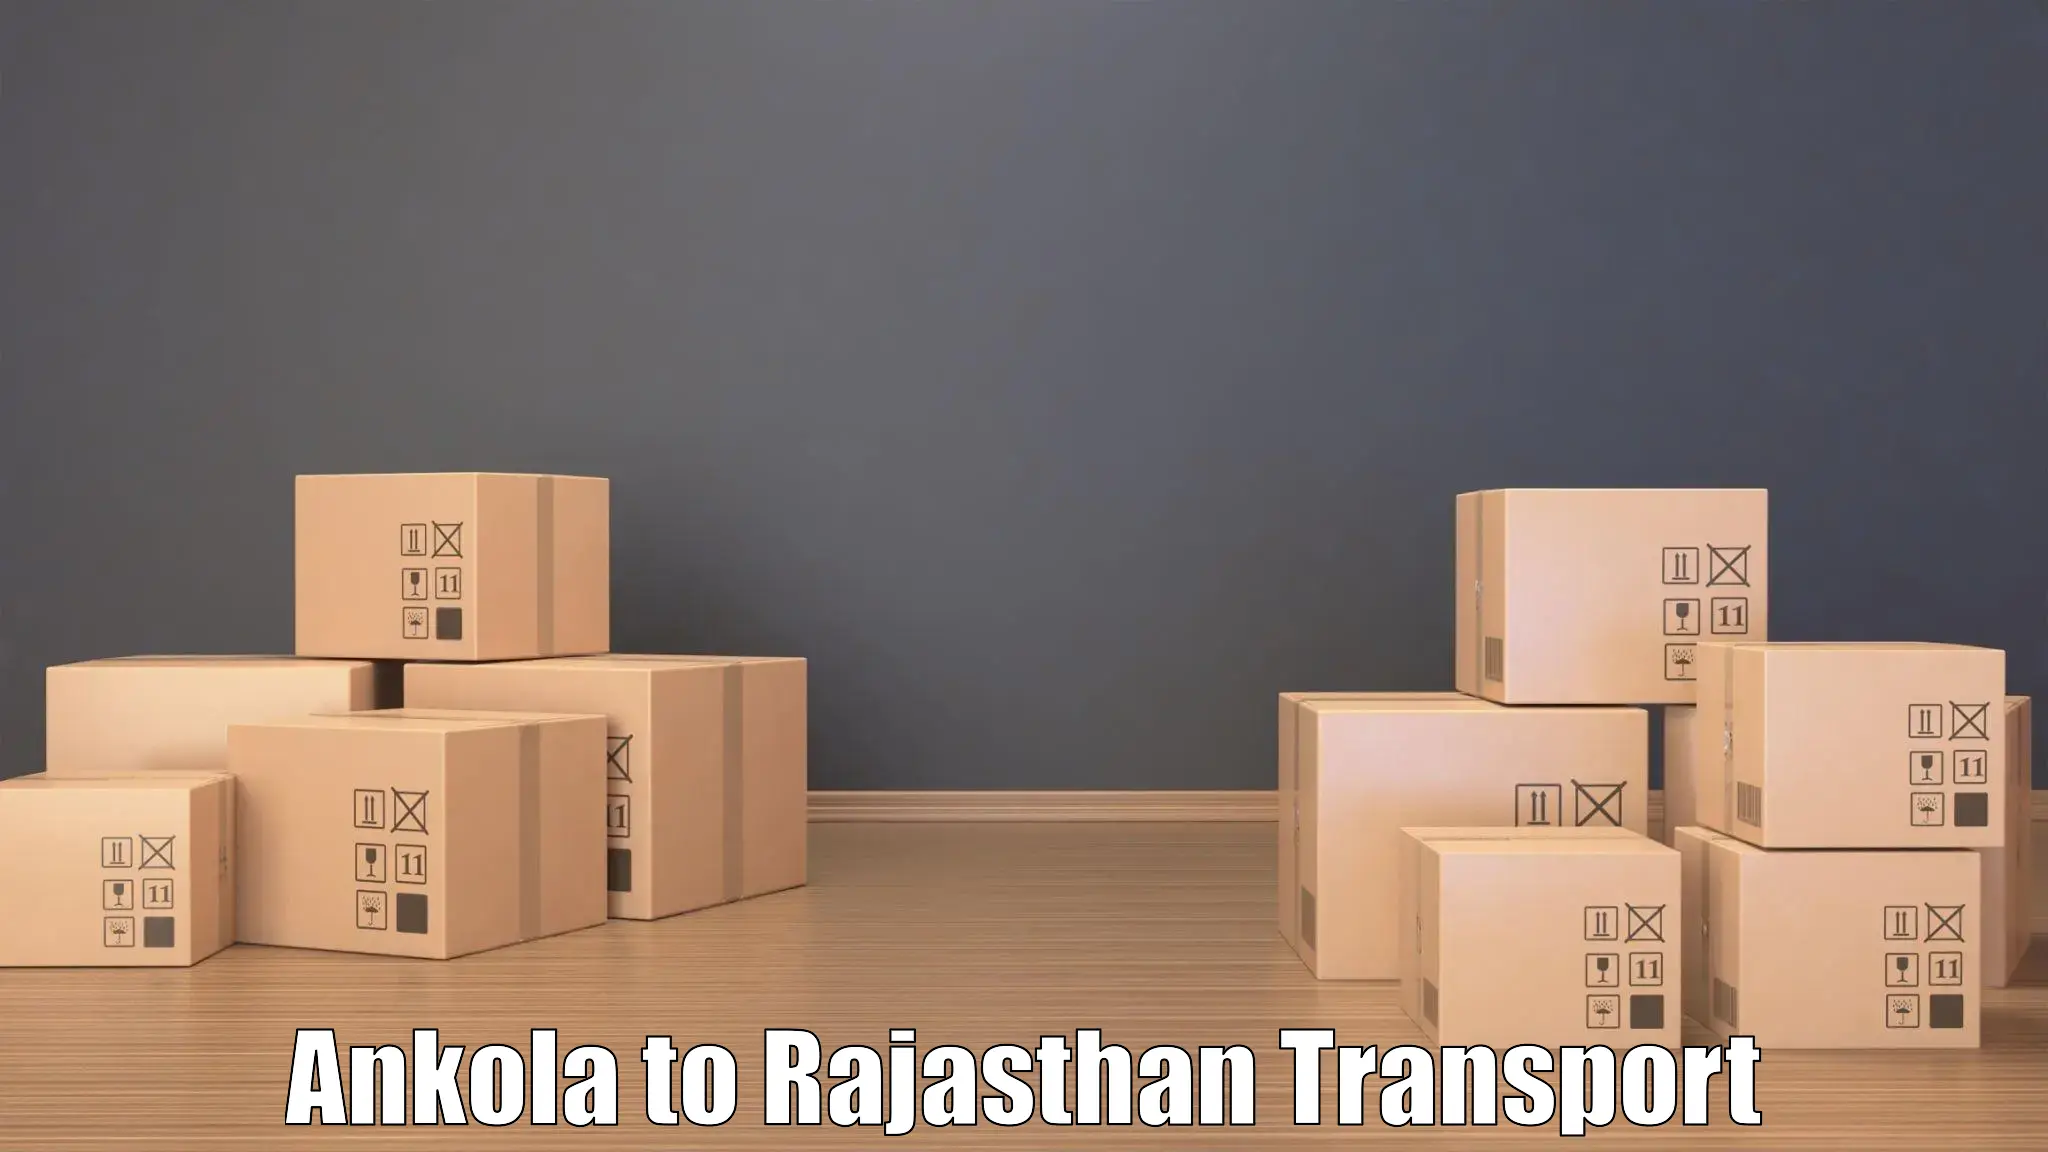 Express transport services in Ankola to Pratapgarh Rajasthan